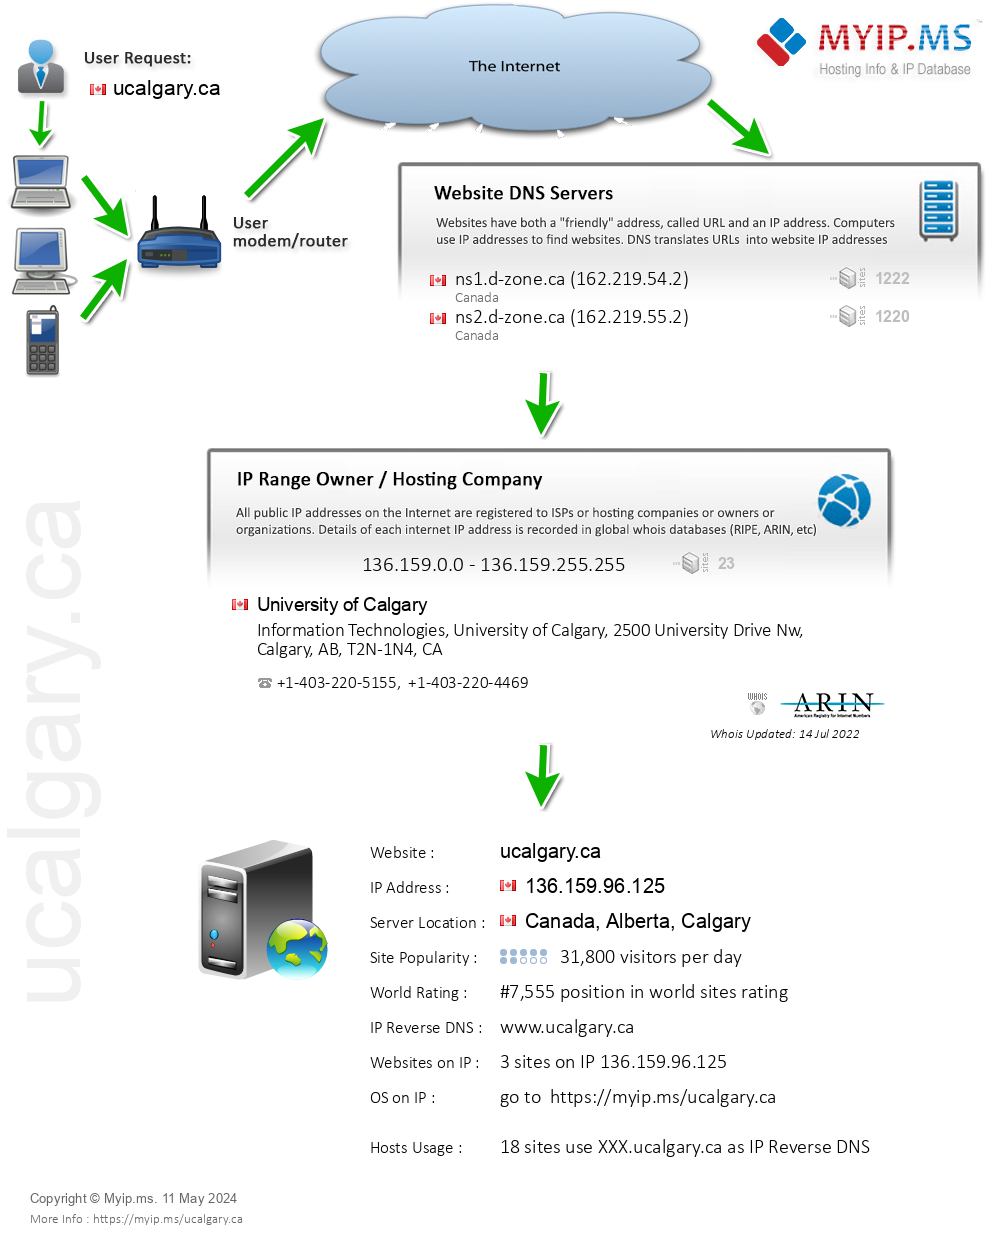 Ucalgary.ca - Website Hosting Visual IP Diagram